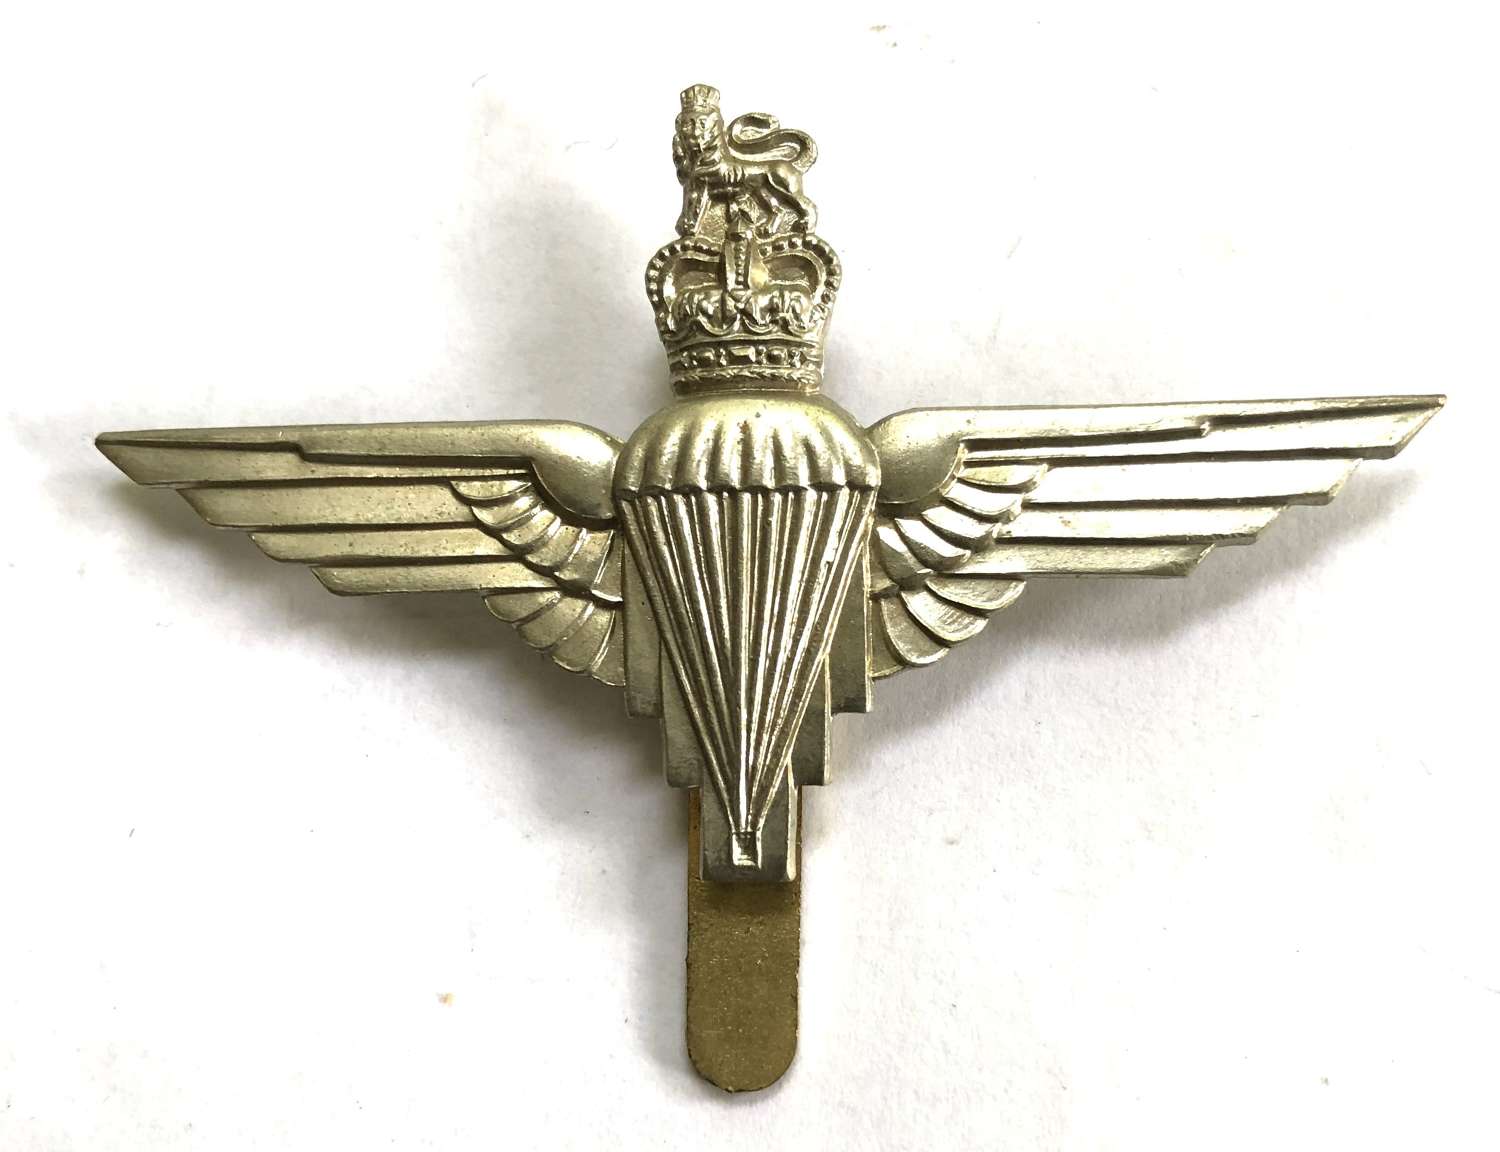 Parachute Regiment post 1953 beret badge by J.R. Gaunt, London